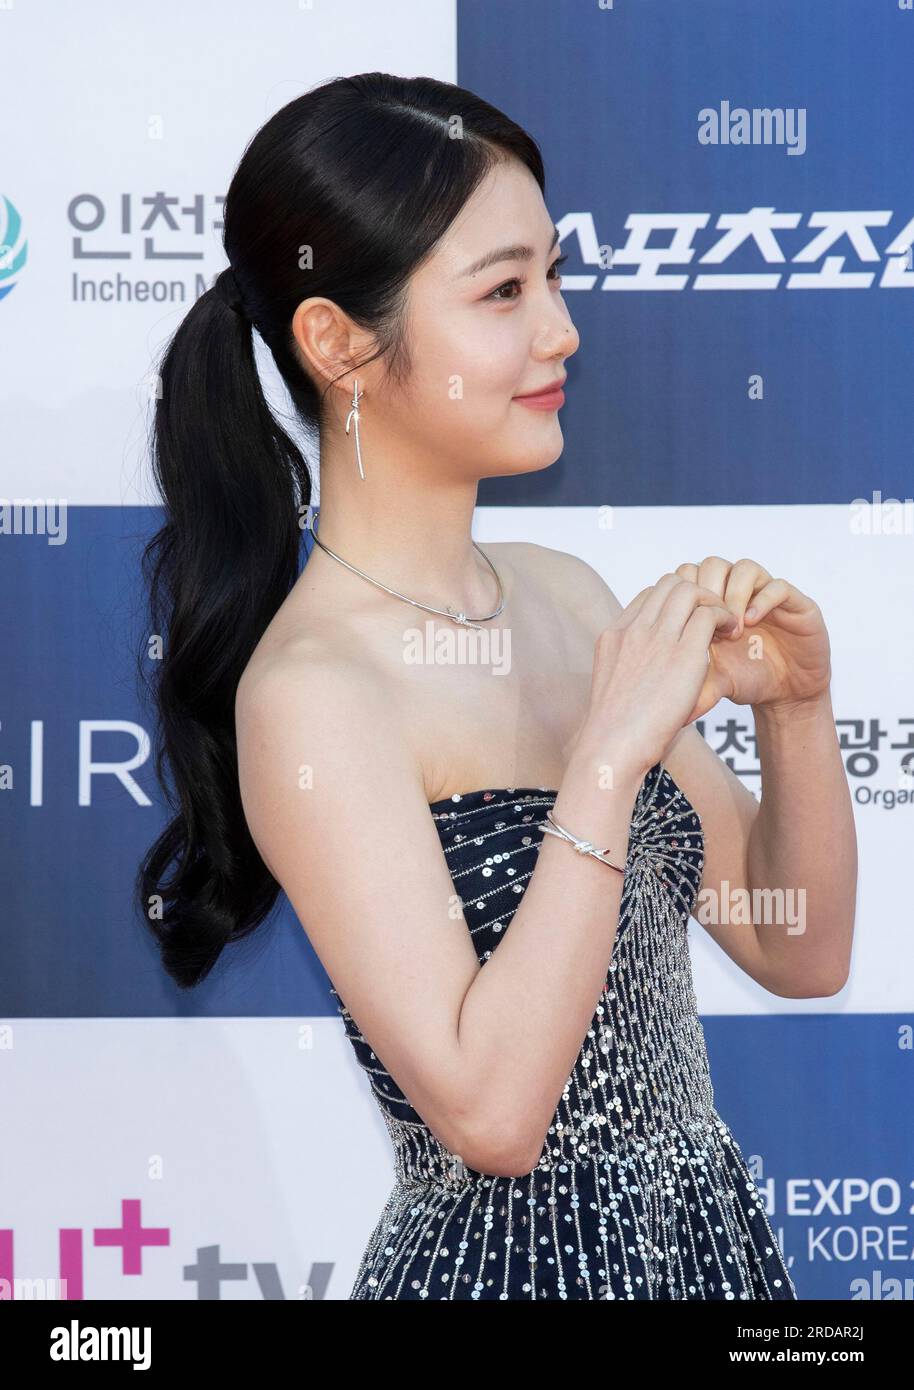 Incheon, South Korea. 19th July, 2023. South Korean actress Shin Yeeun